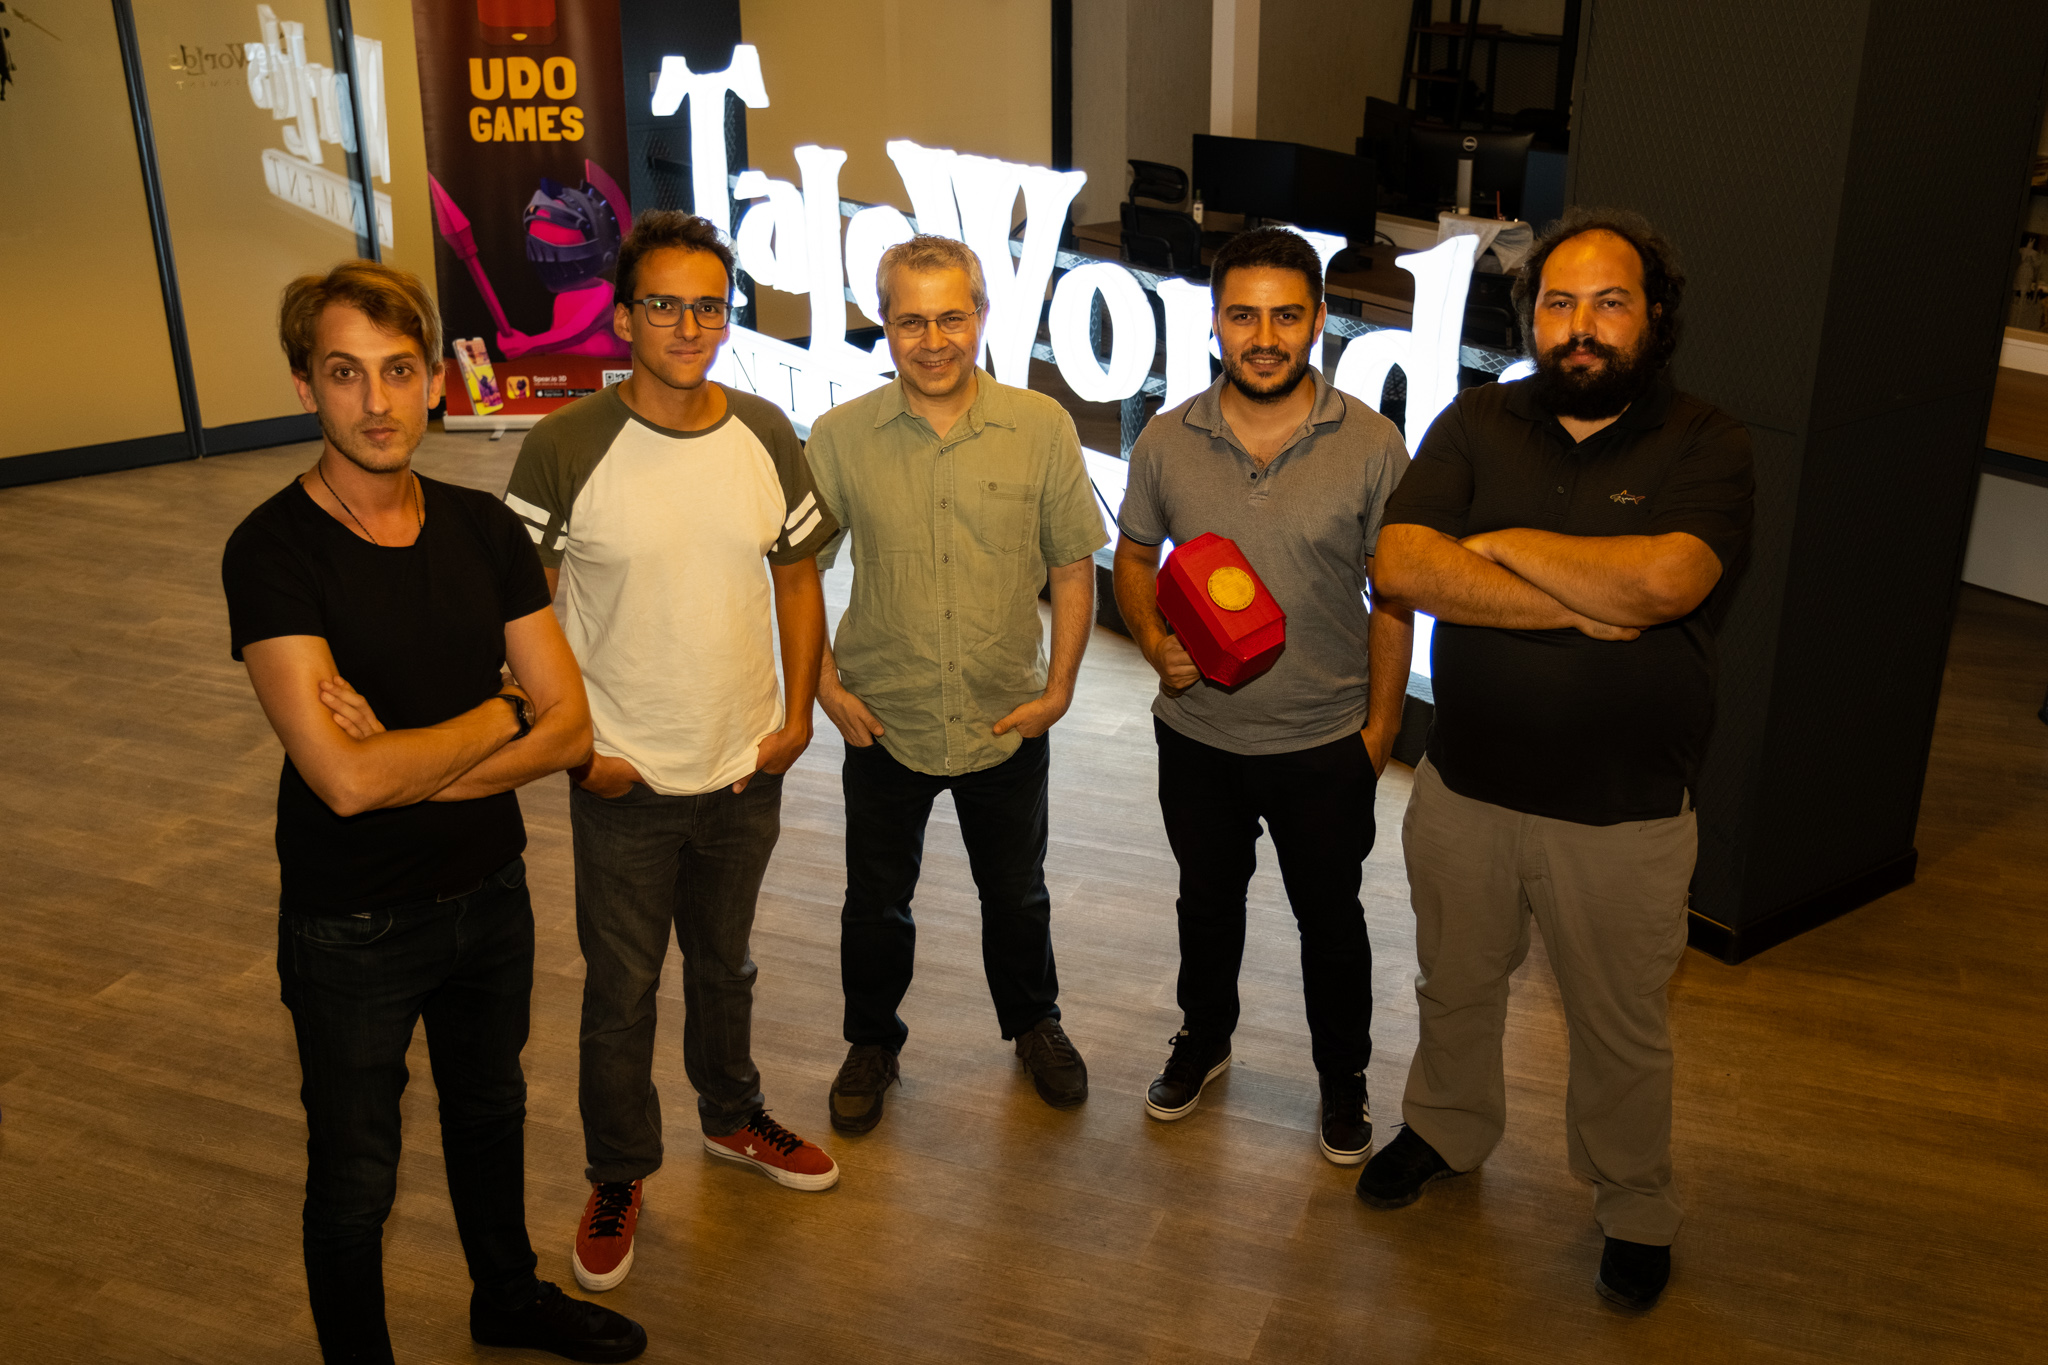 Türk Oyun Sektöründe Önemli Ortaklık: TaleWorlds ve Udo Games oyun yayıncılığı için güçlerini birleştiriyor